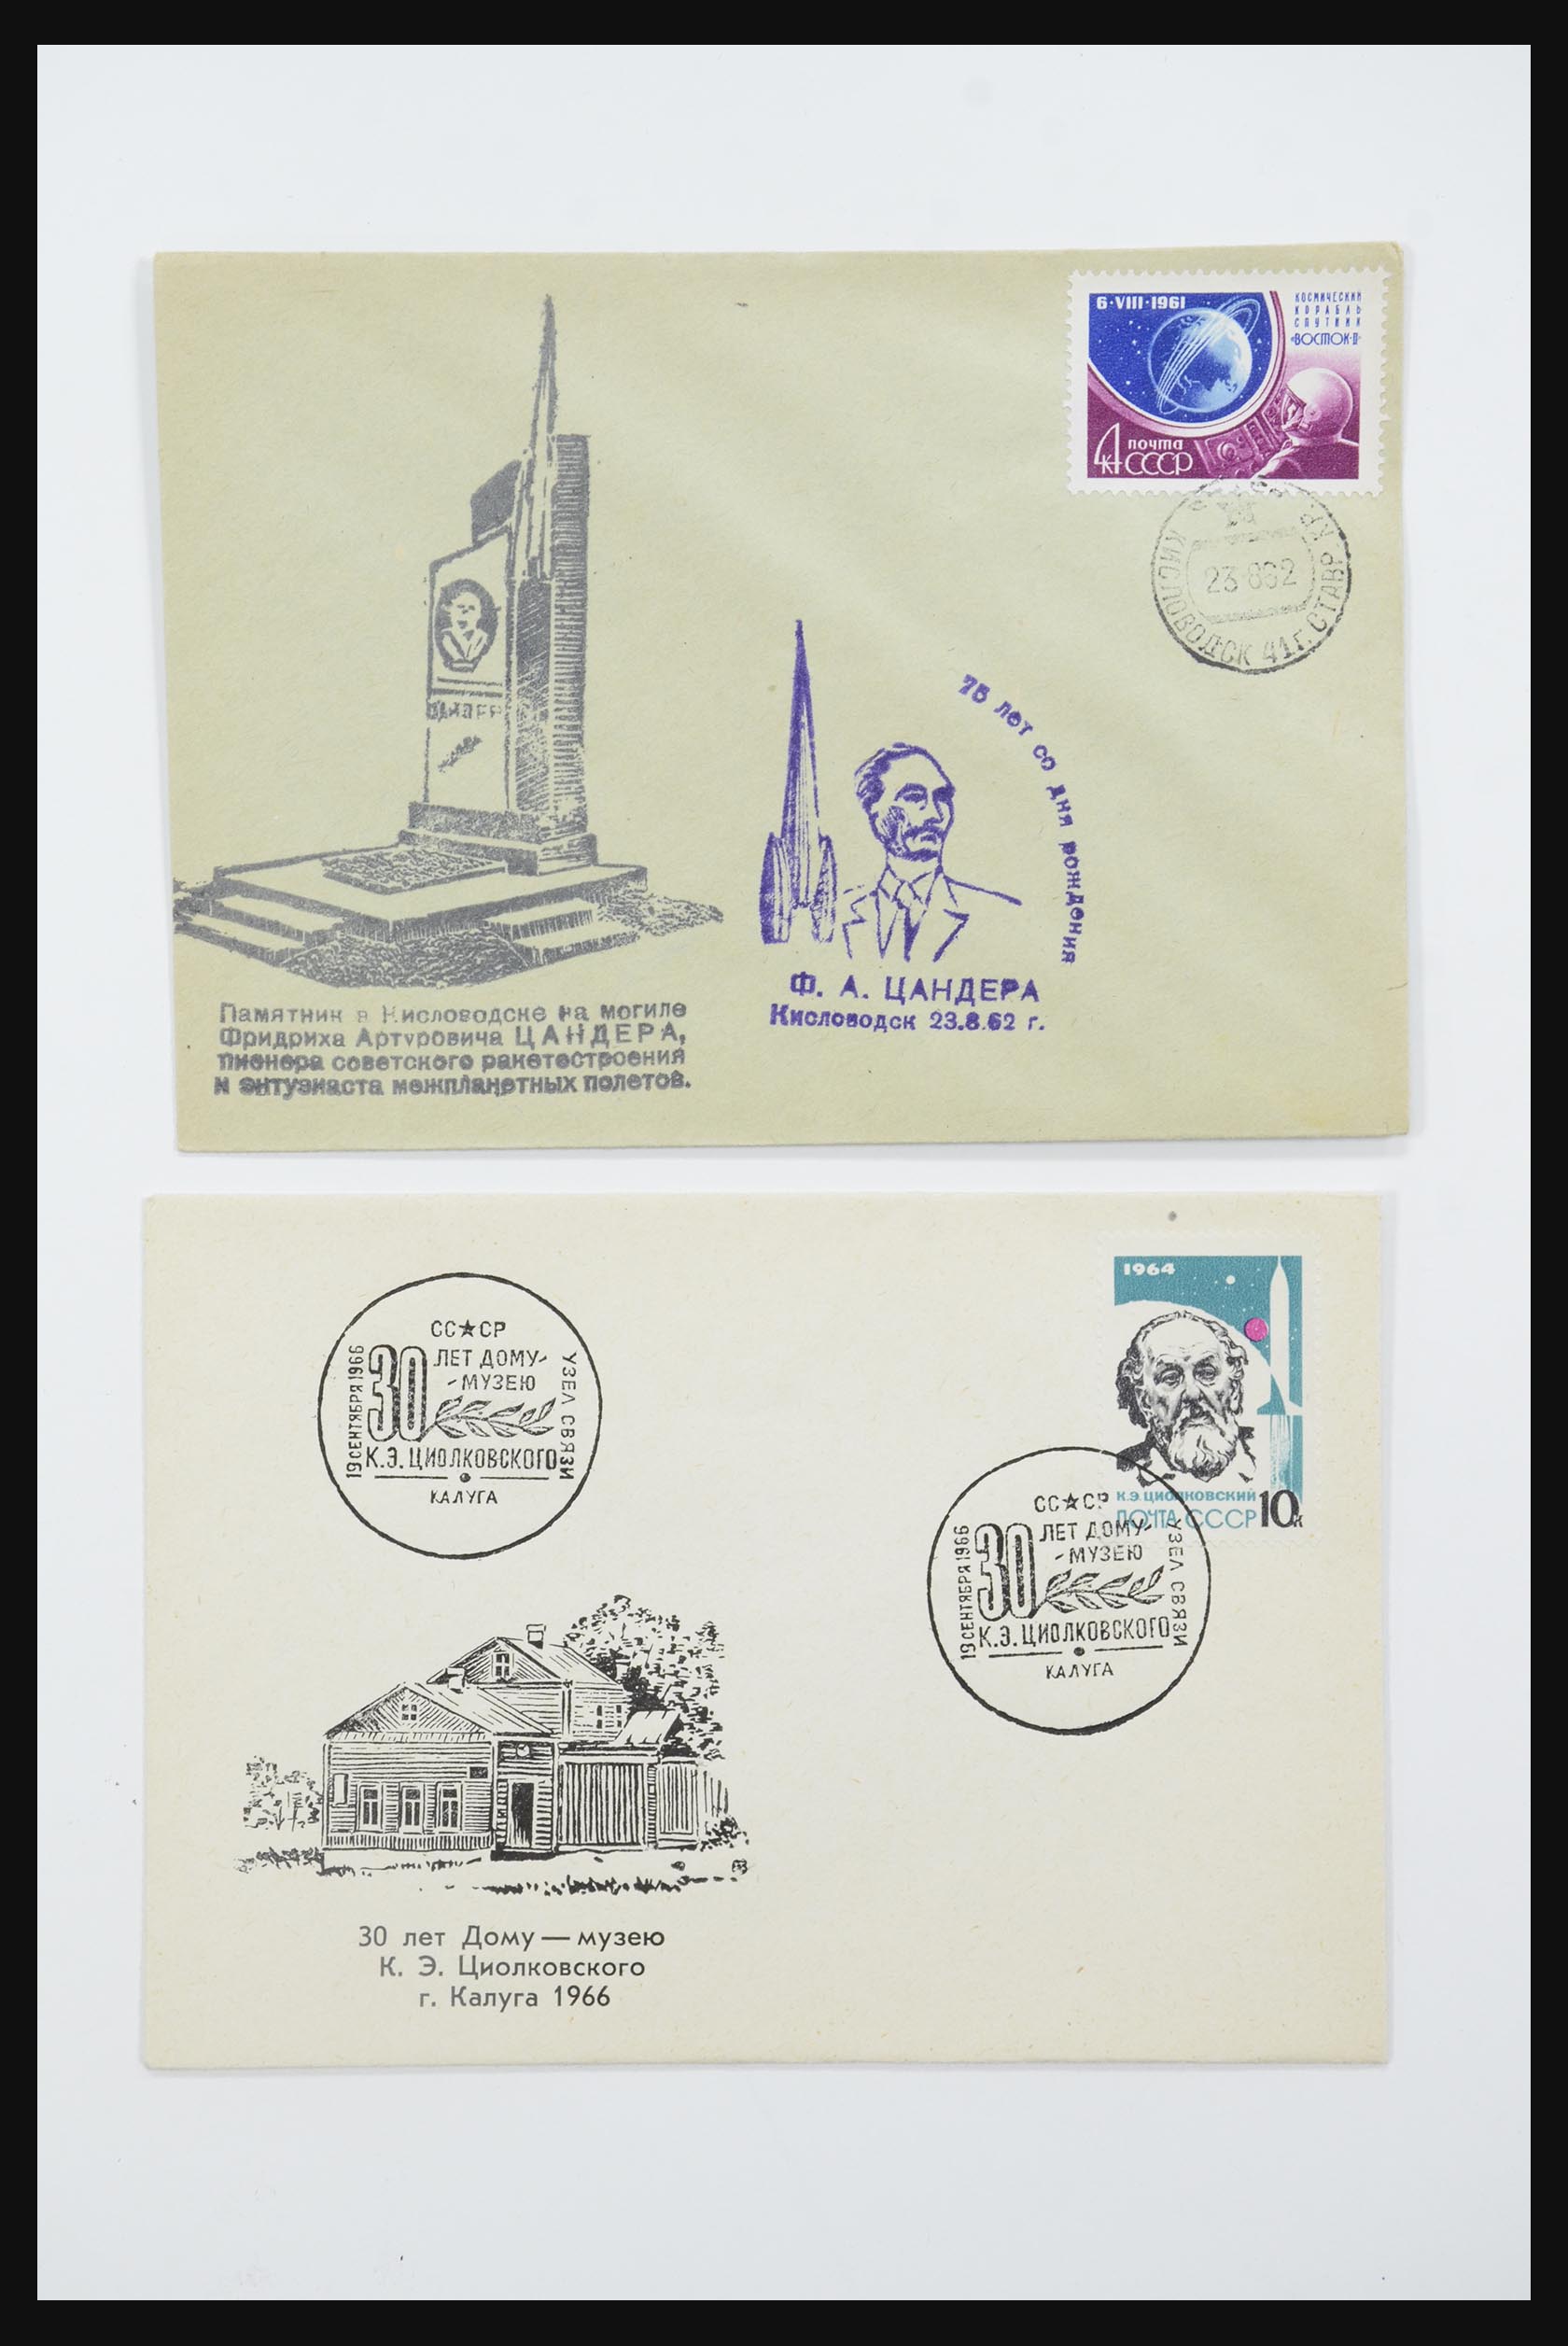 31605 0031 - 31605 Rusland postwaardestukken jaren 50-60.